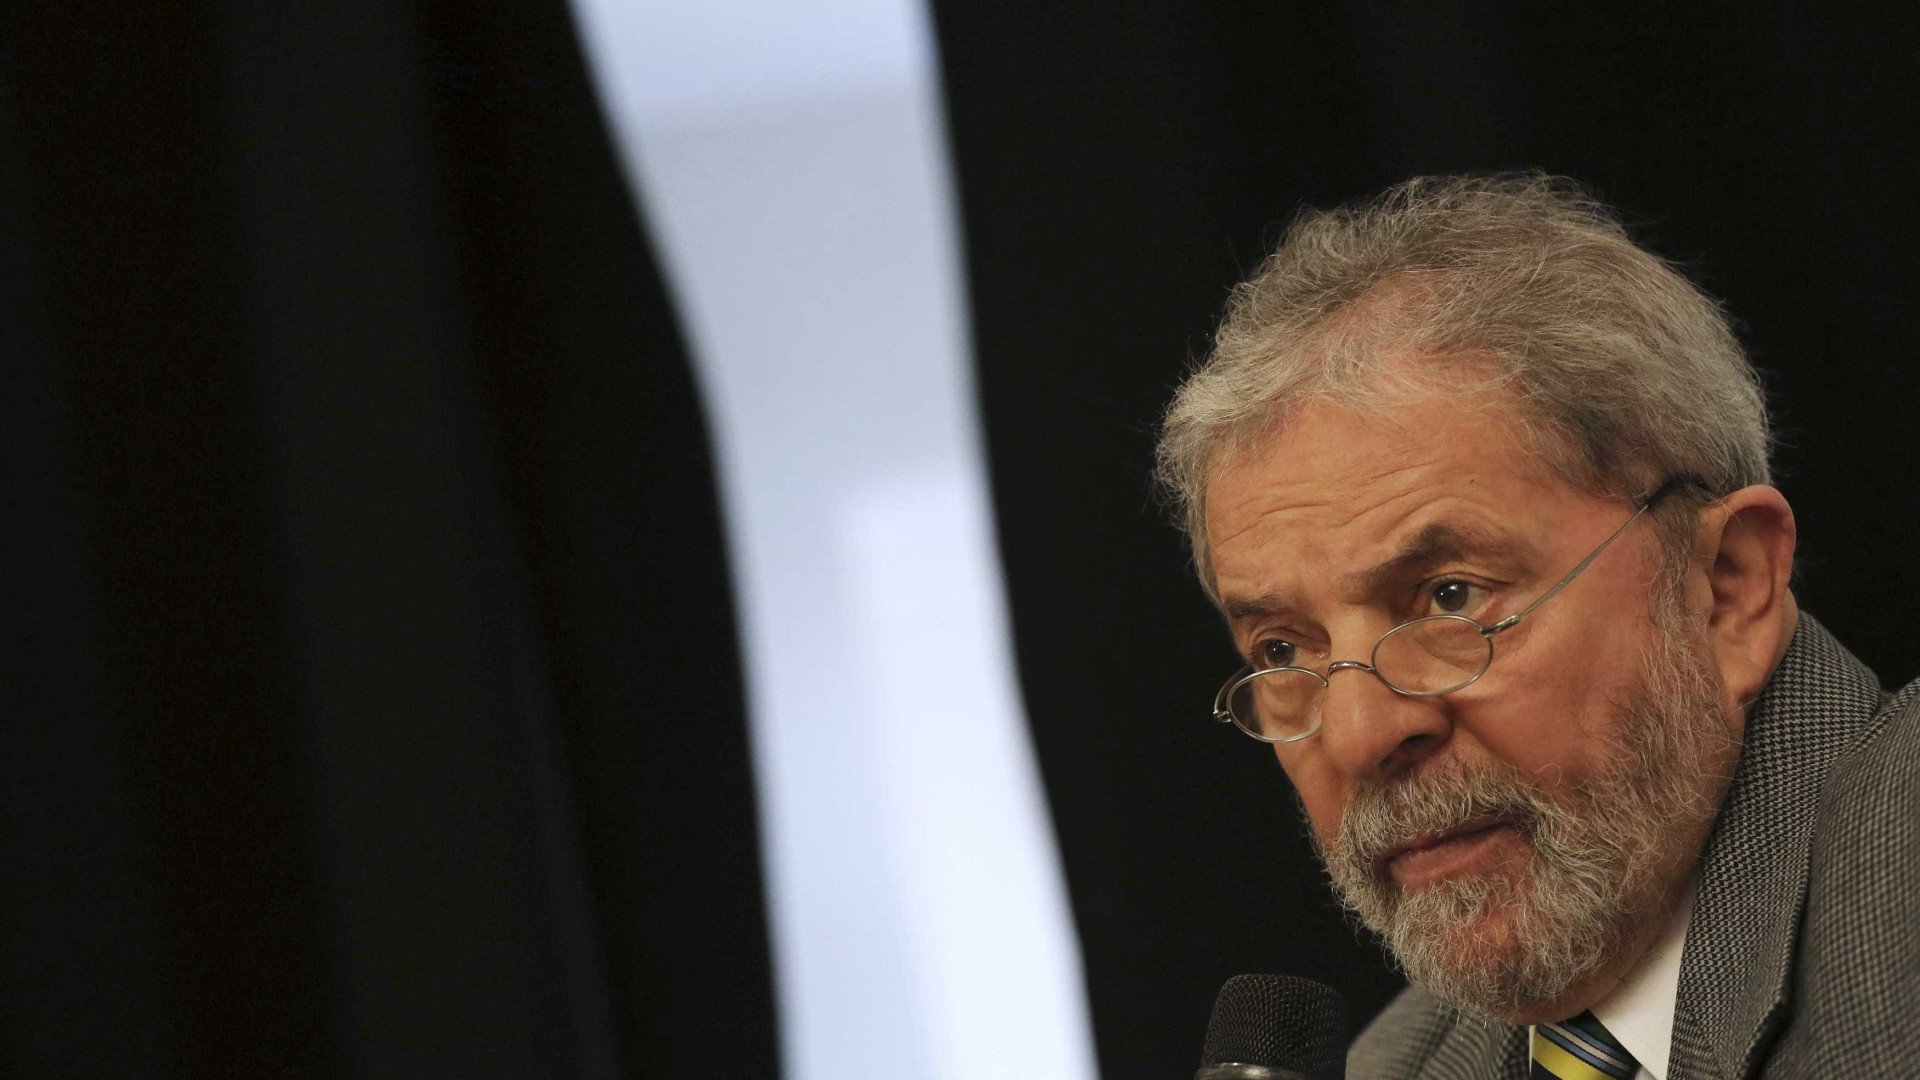 Sob sigilo, Lula presta depoimento de 
duas horas à Lava Jato